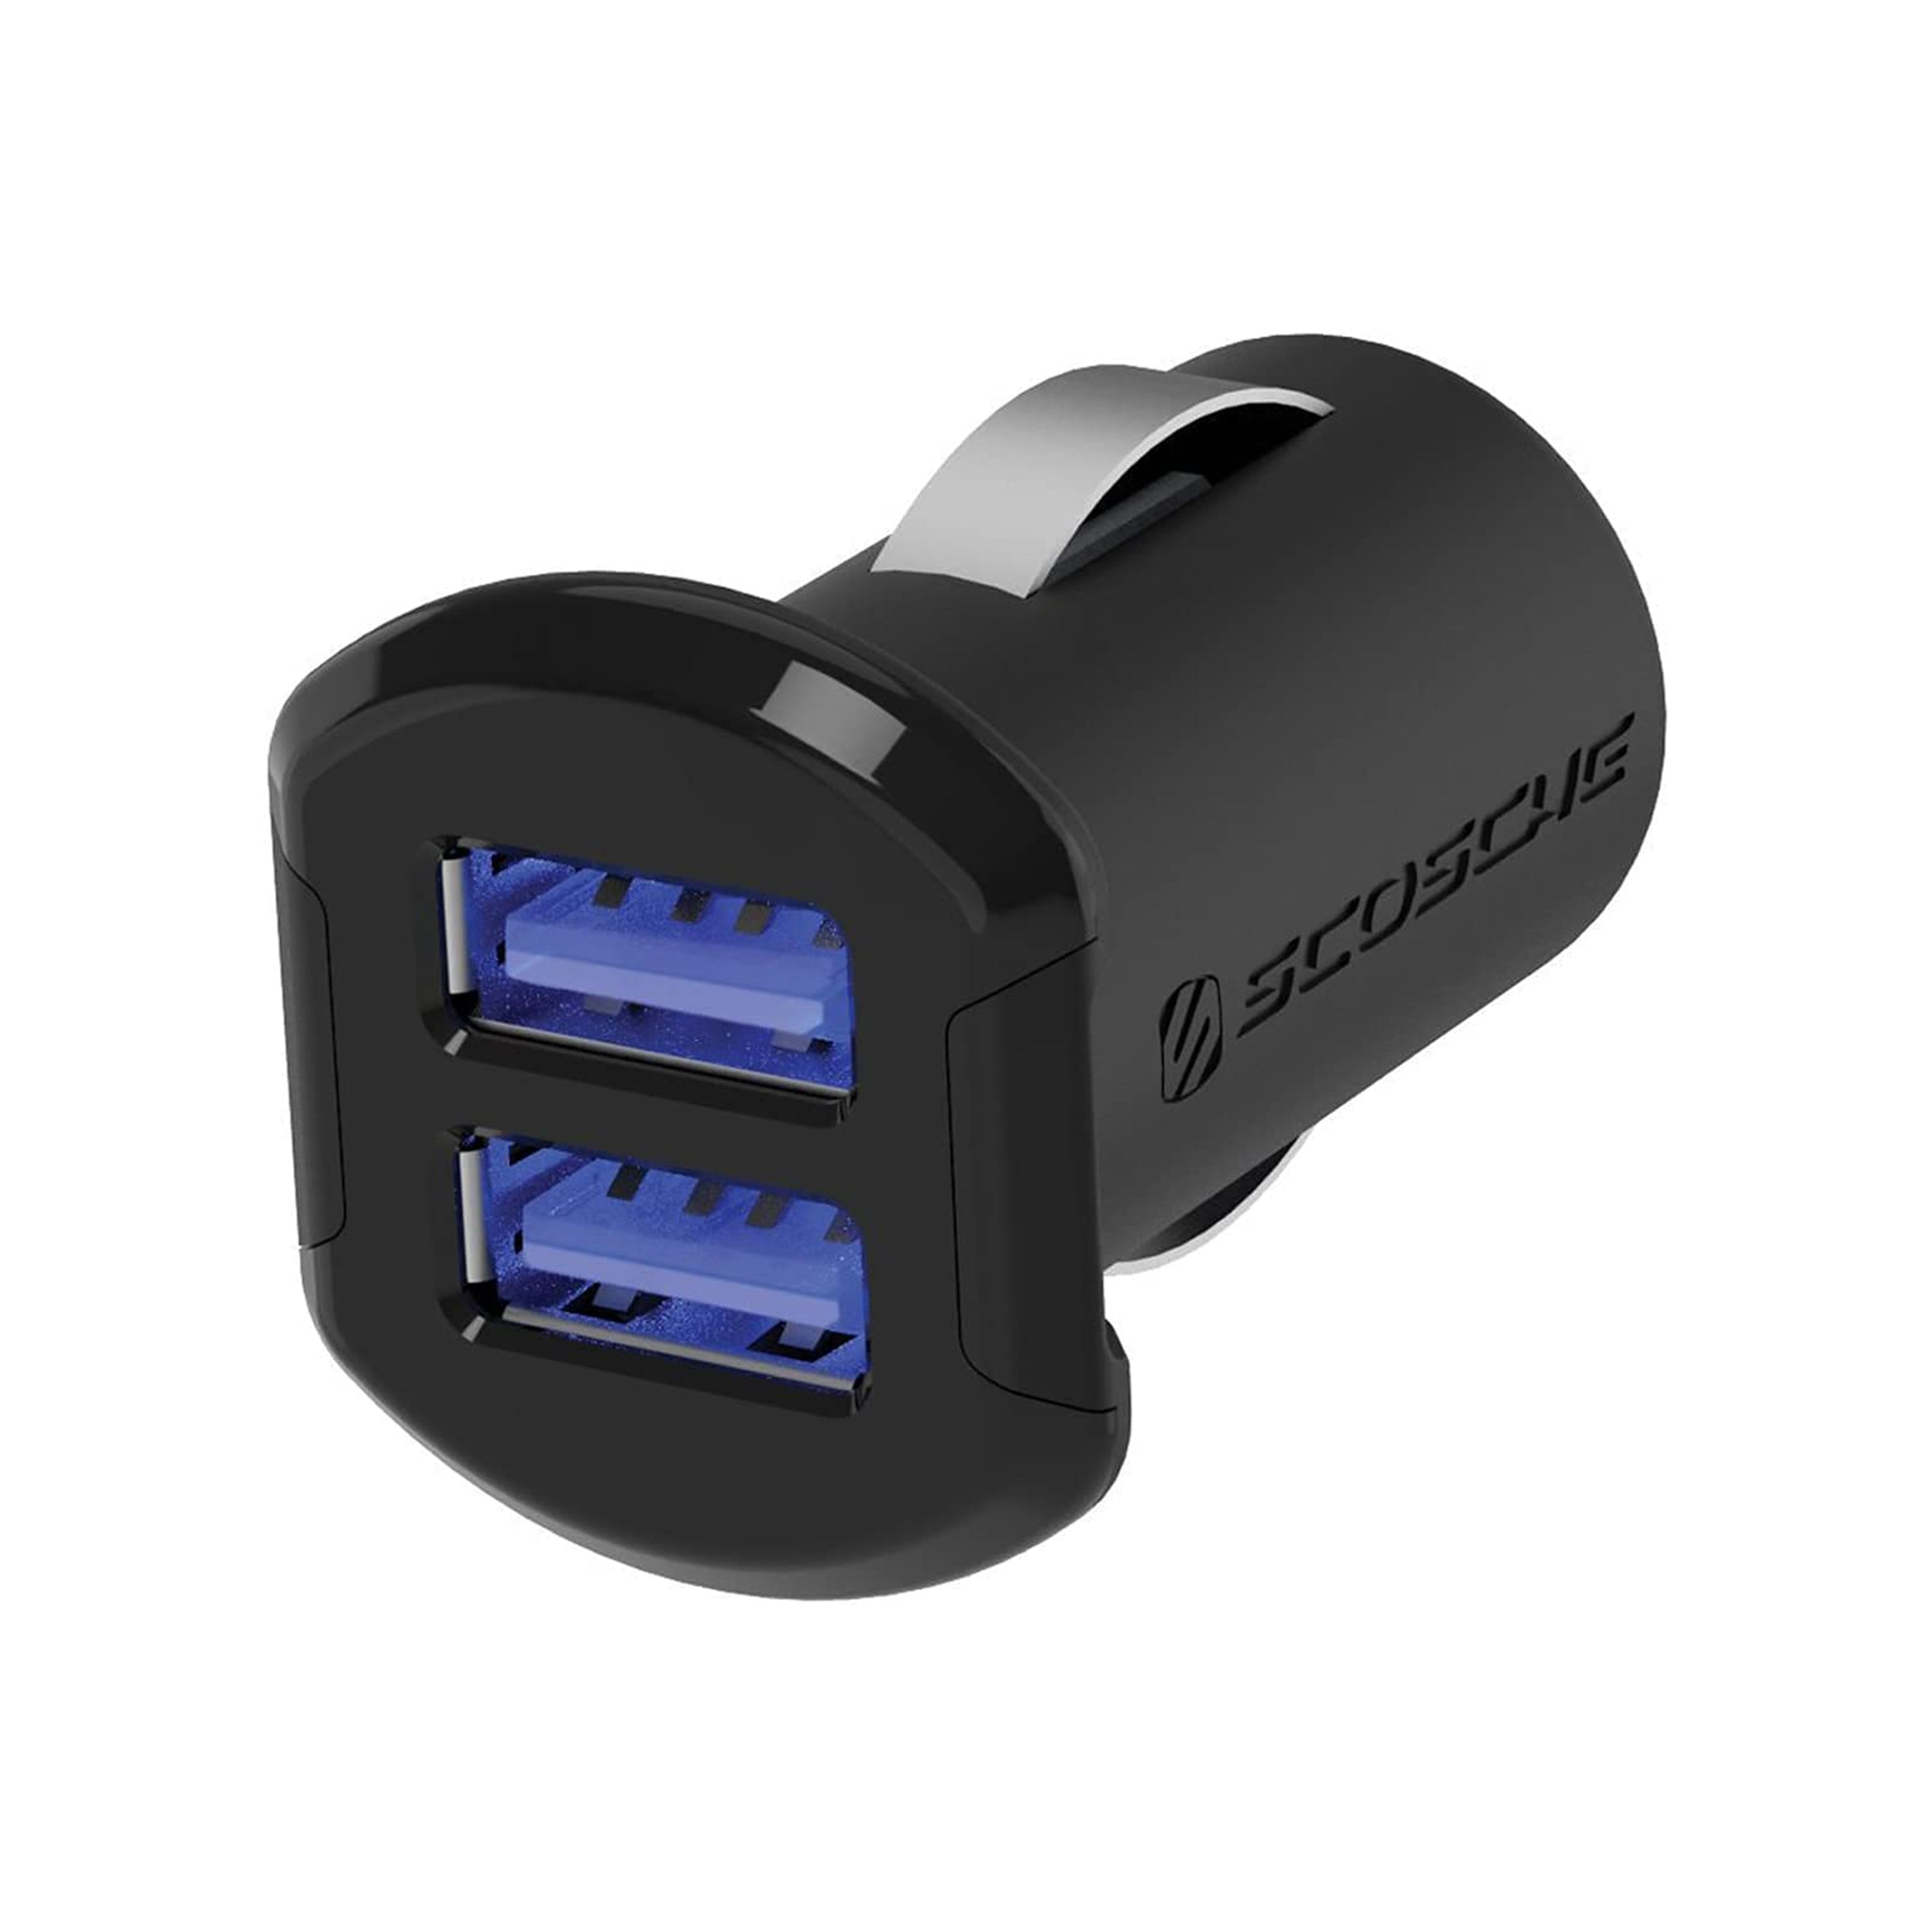 Scosche USBC242M, Dual 12W USB Car Charger w/ Illuminated USB Ports (Black)